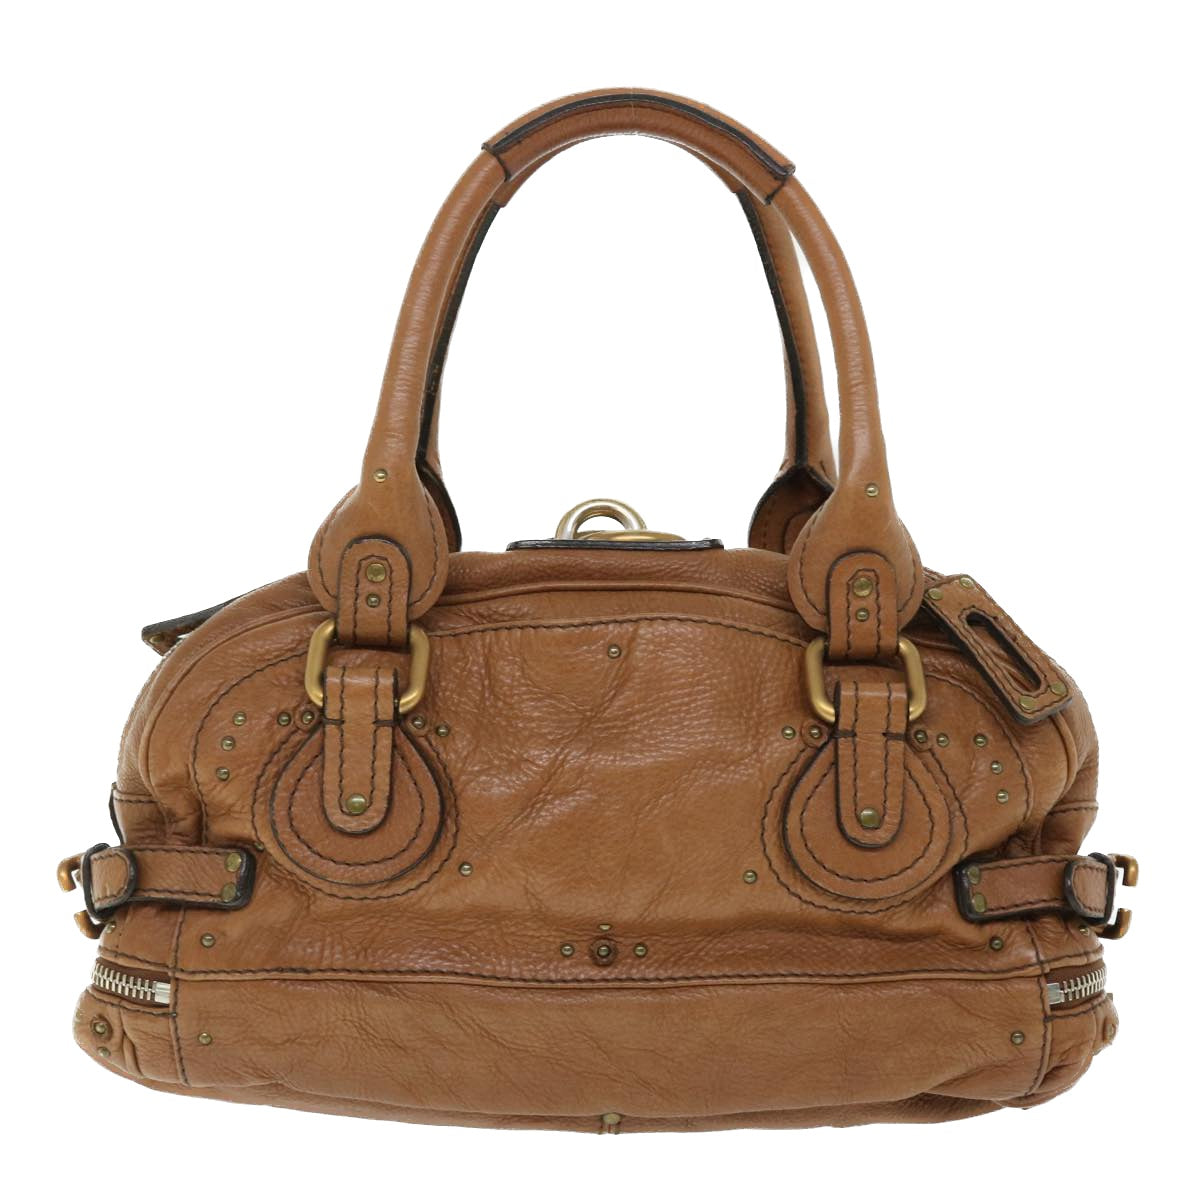 Chloe Paddington Hand Bag Leather Brown 04-06-53 Auth am4849 - 0